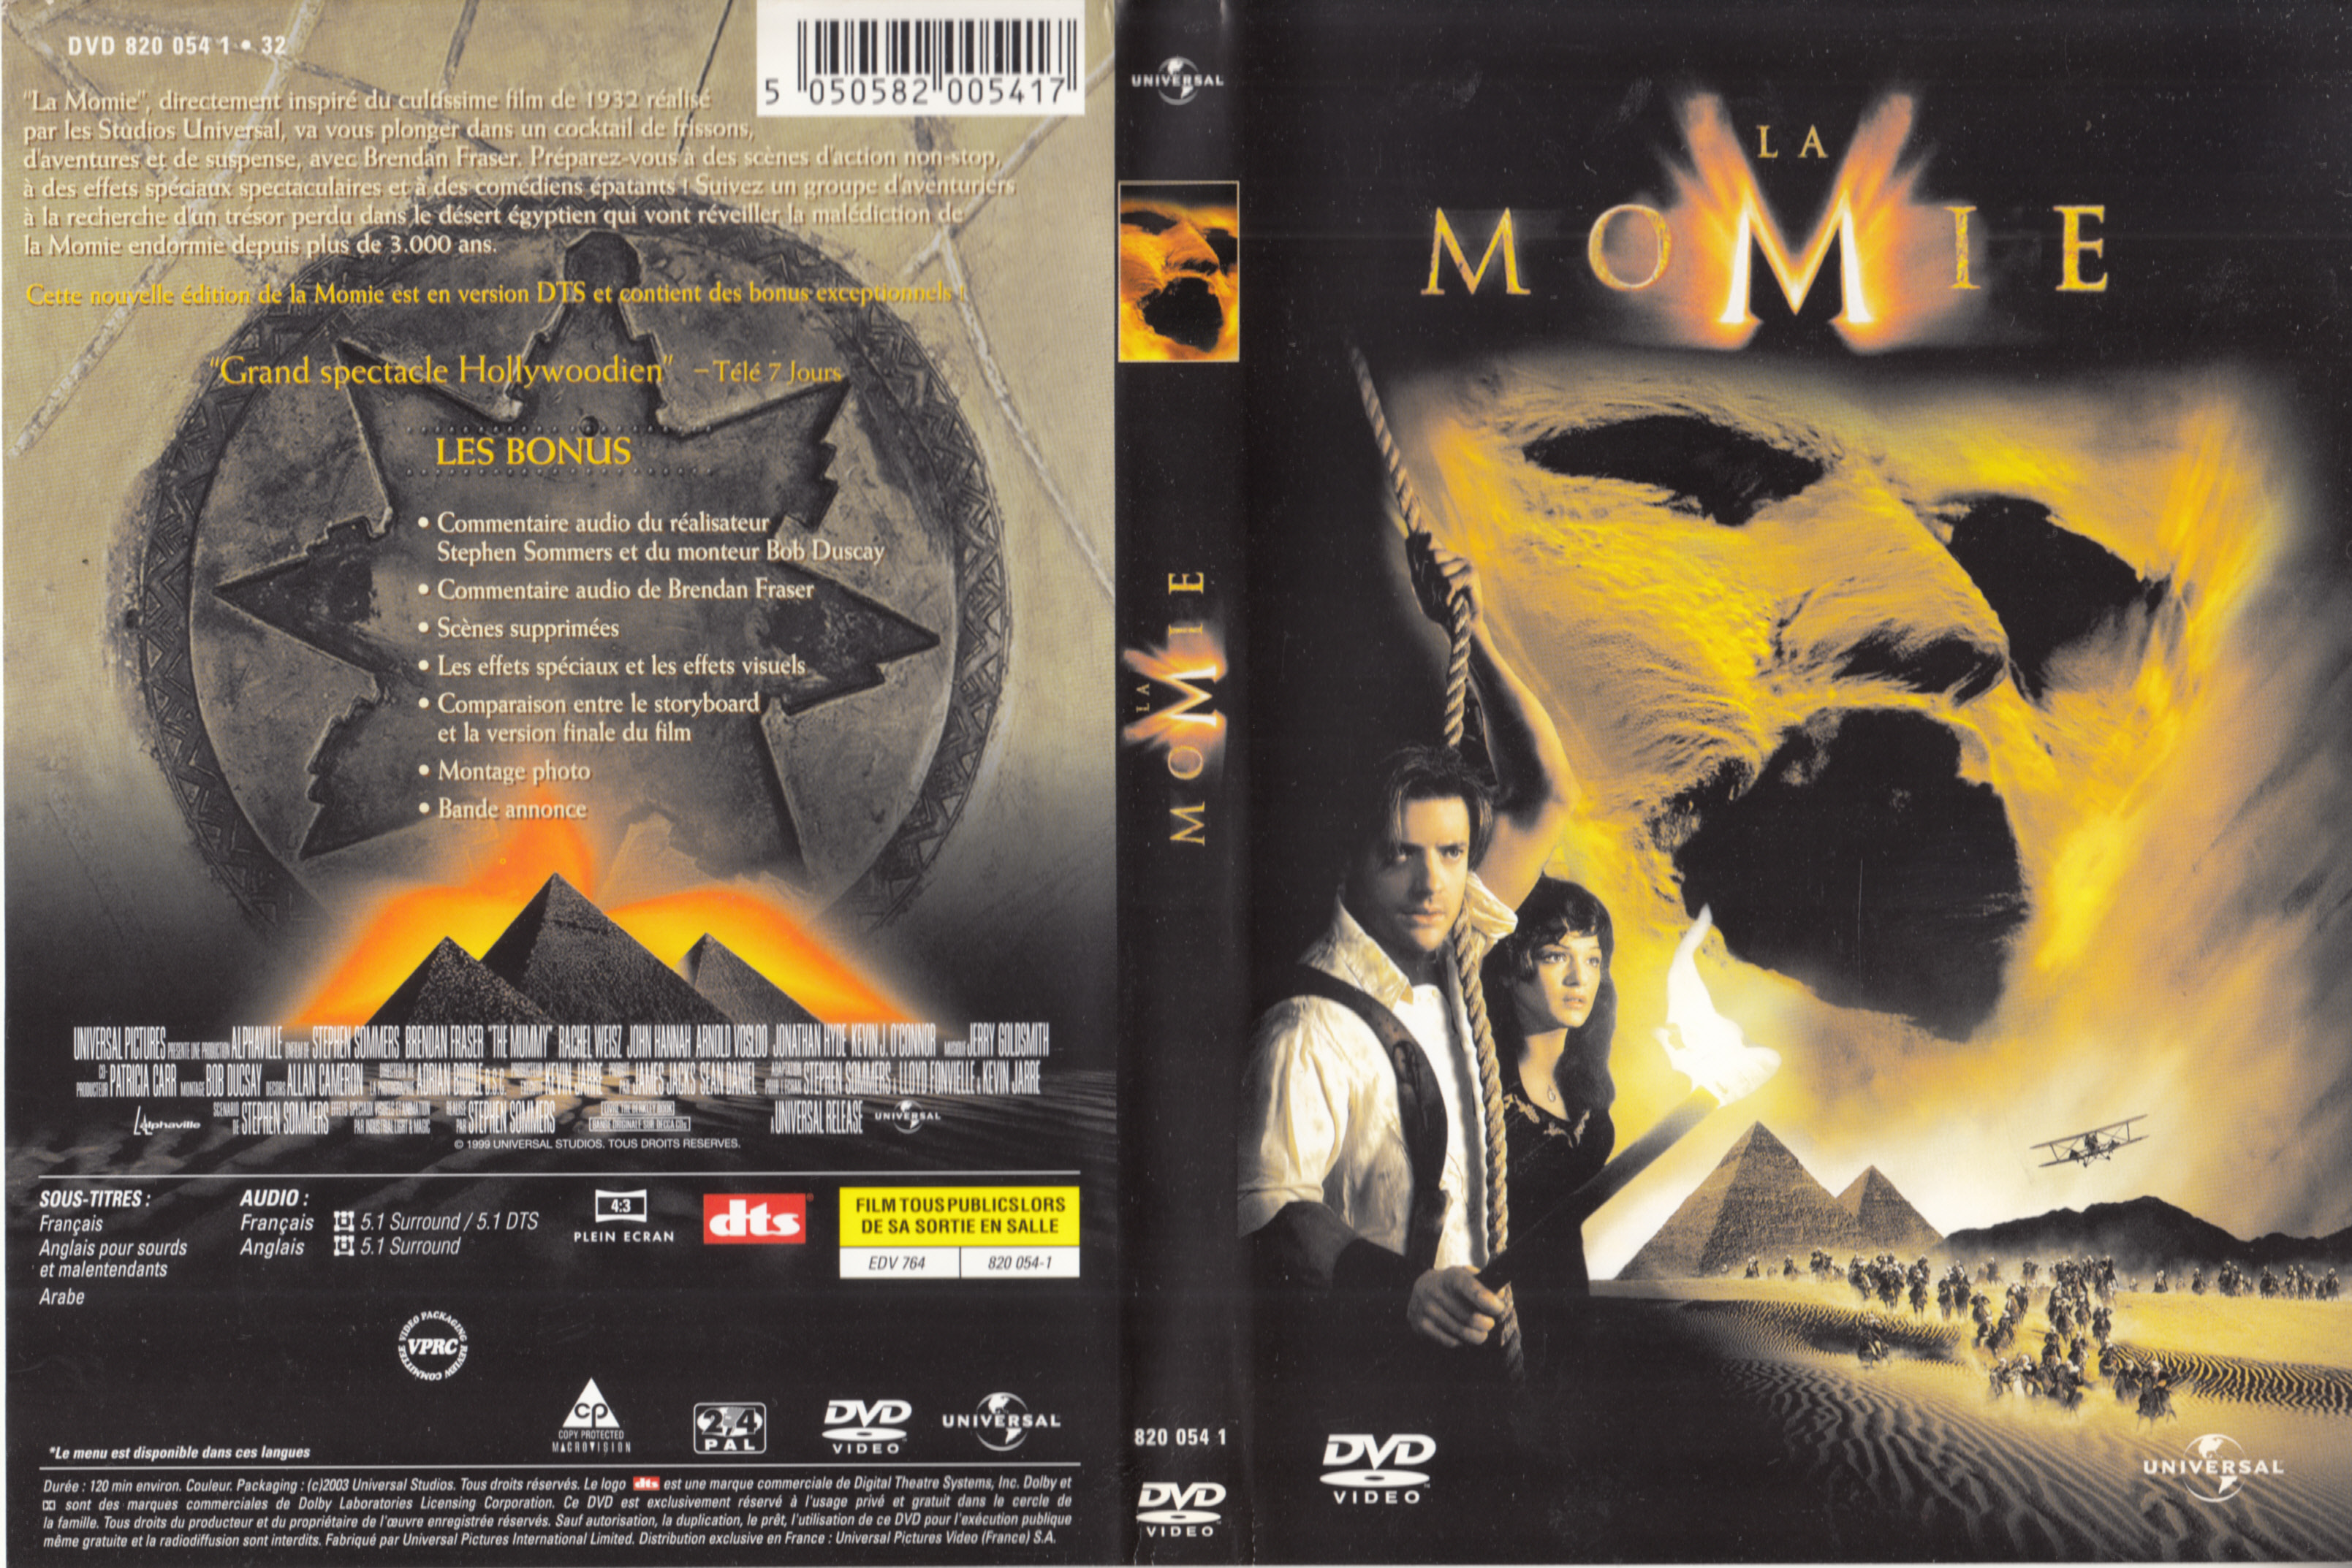 Jaquette DVD La momie v4